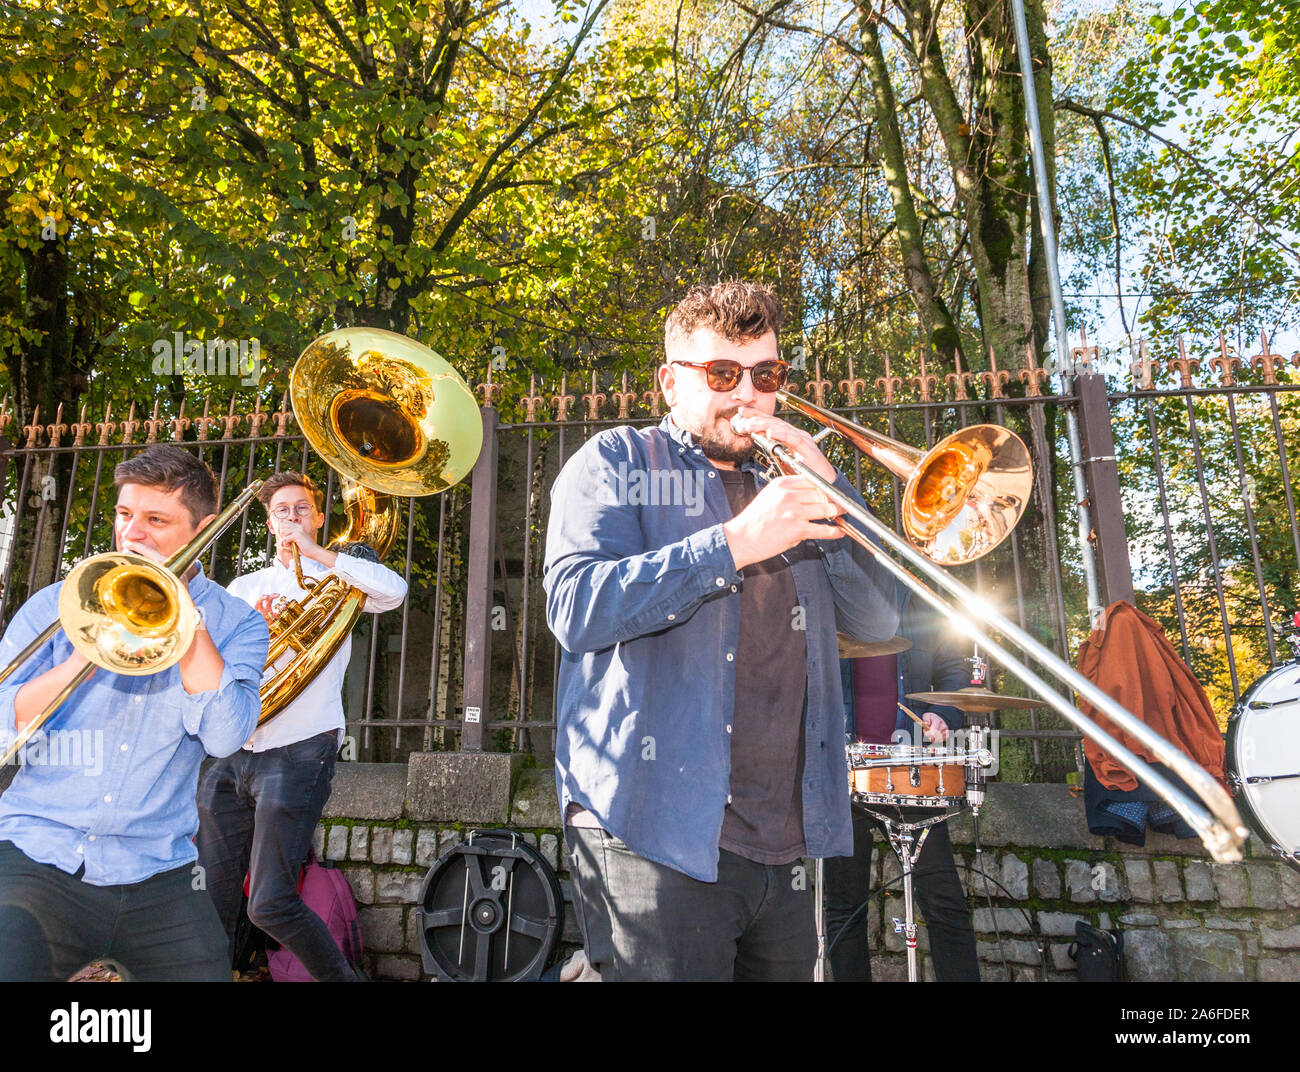 La ville de Cork, Cork, Irlande. 26 octobre, 2019. Hyde Park Brass jouer improviser une performance pour le public sur Grand Parade pendant le Festival de Jazz de Cork, Irlande. - Crédit ; David Creedon / Alamy Live News Banque D'Images